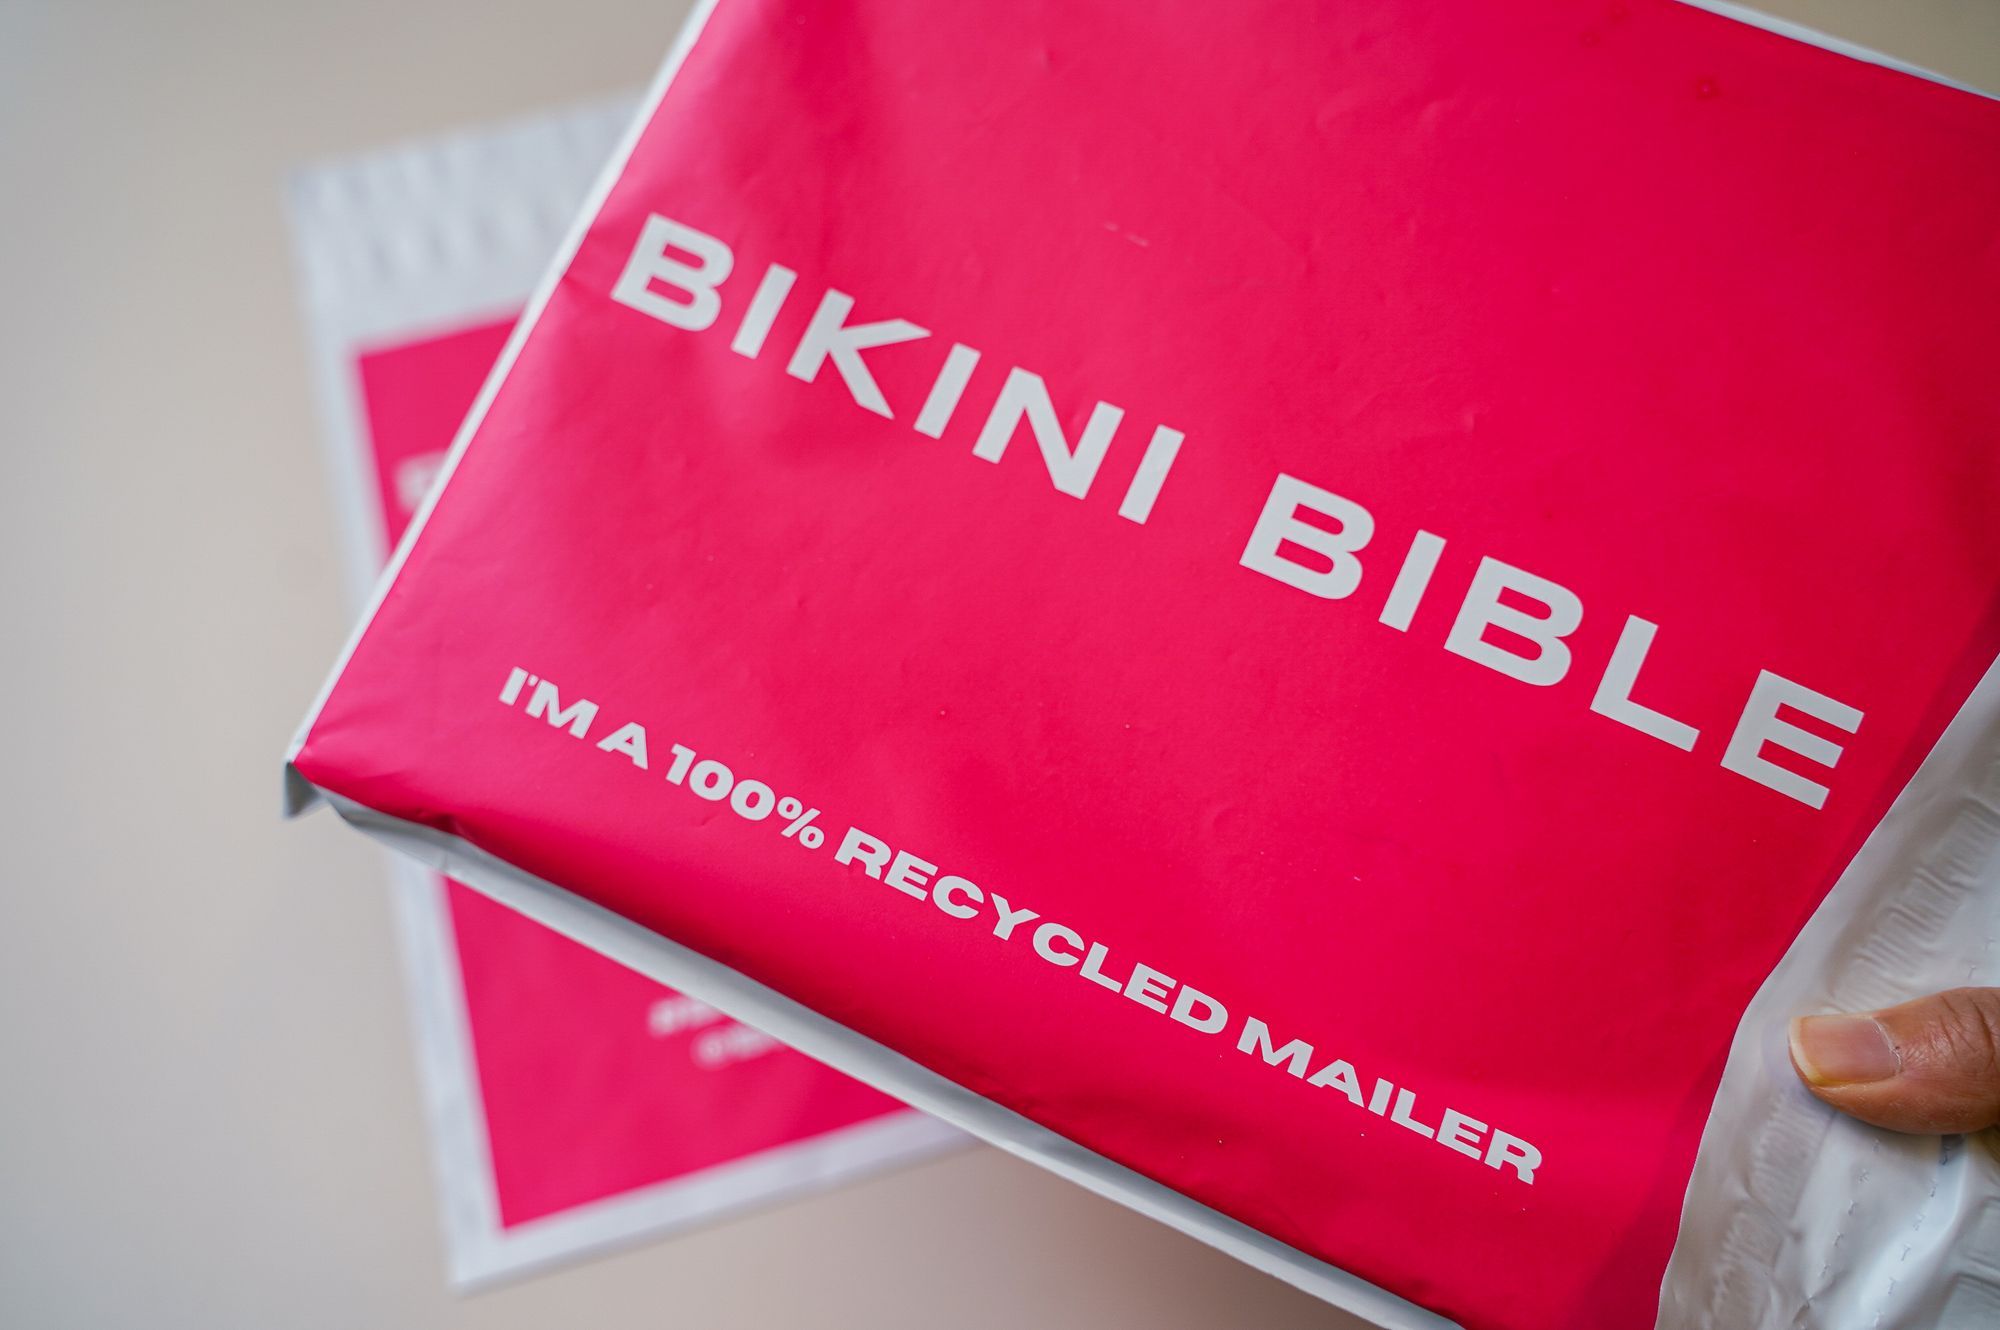 Bikini Bible